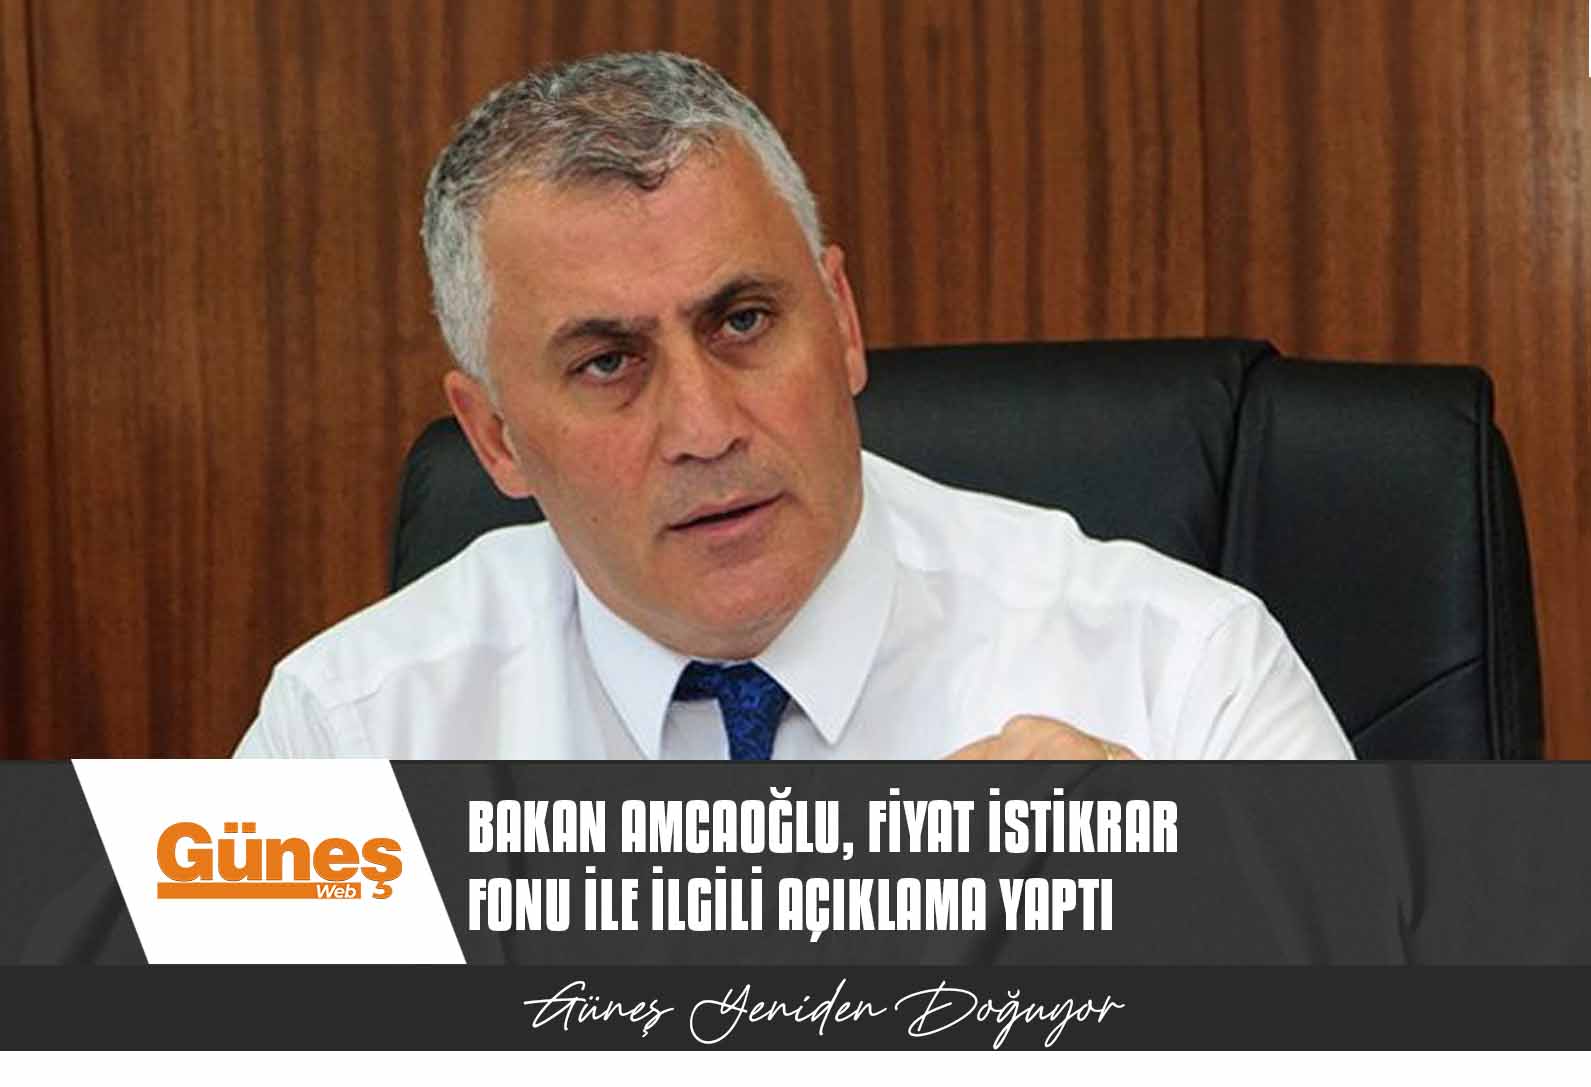 Ekonomi ve Enerji Bakanı Amcaoğlu, Fiyat İstikrar Fonu ile ilgili açıklama yaptı